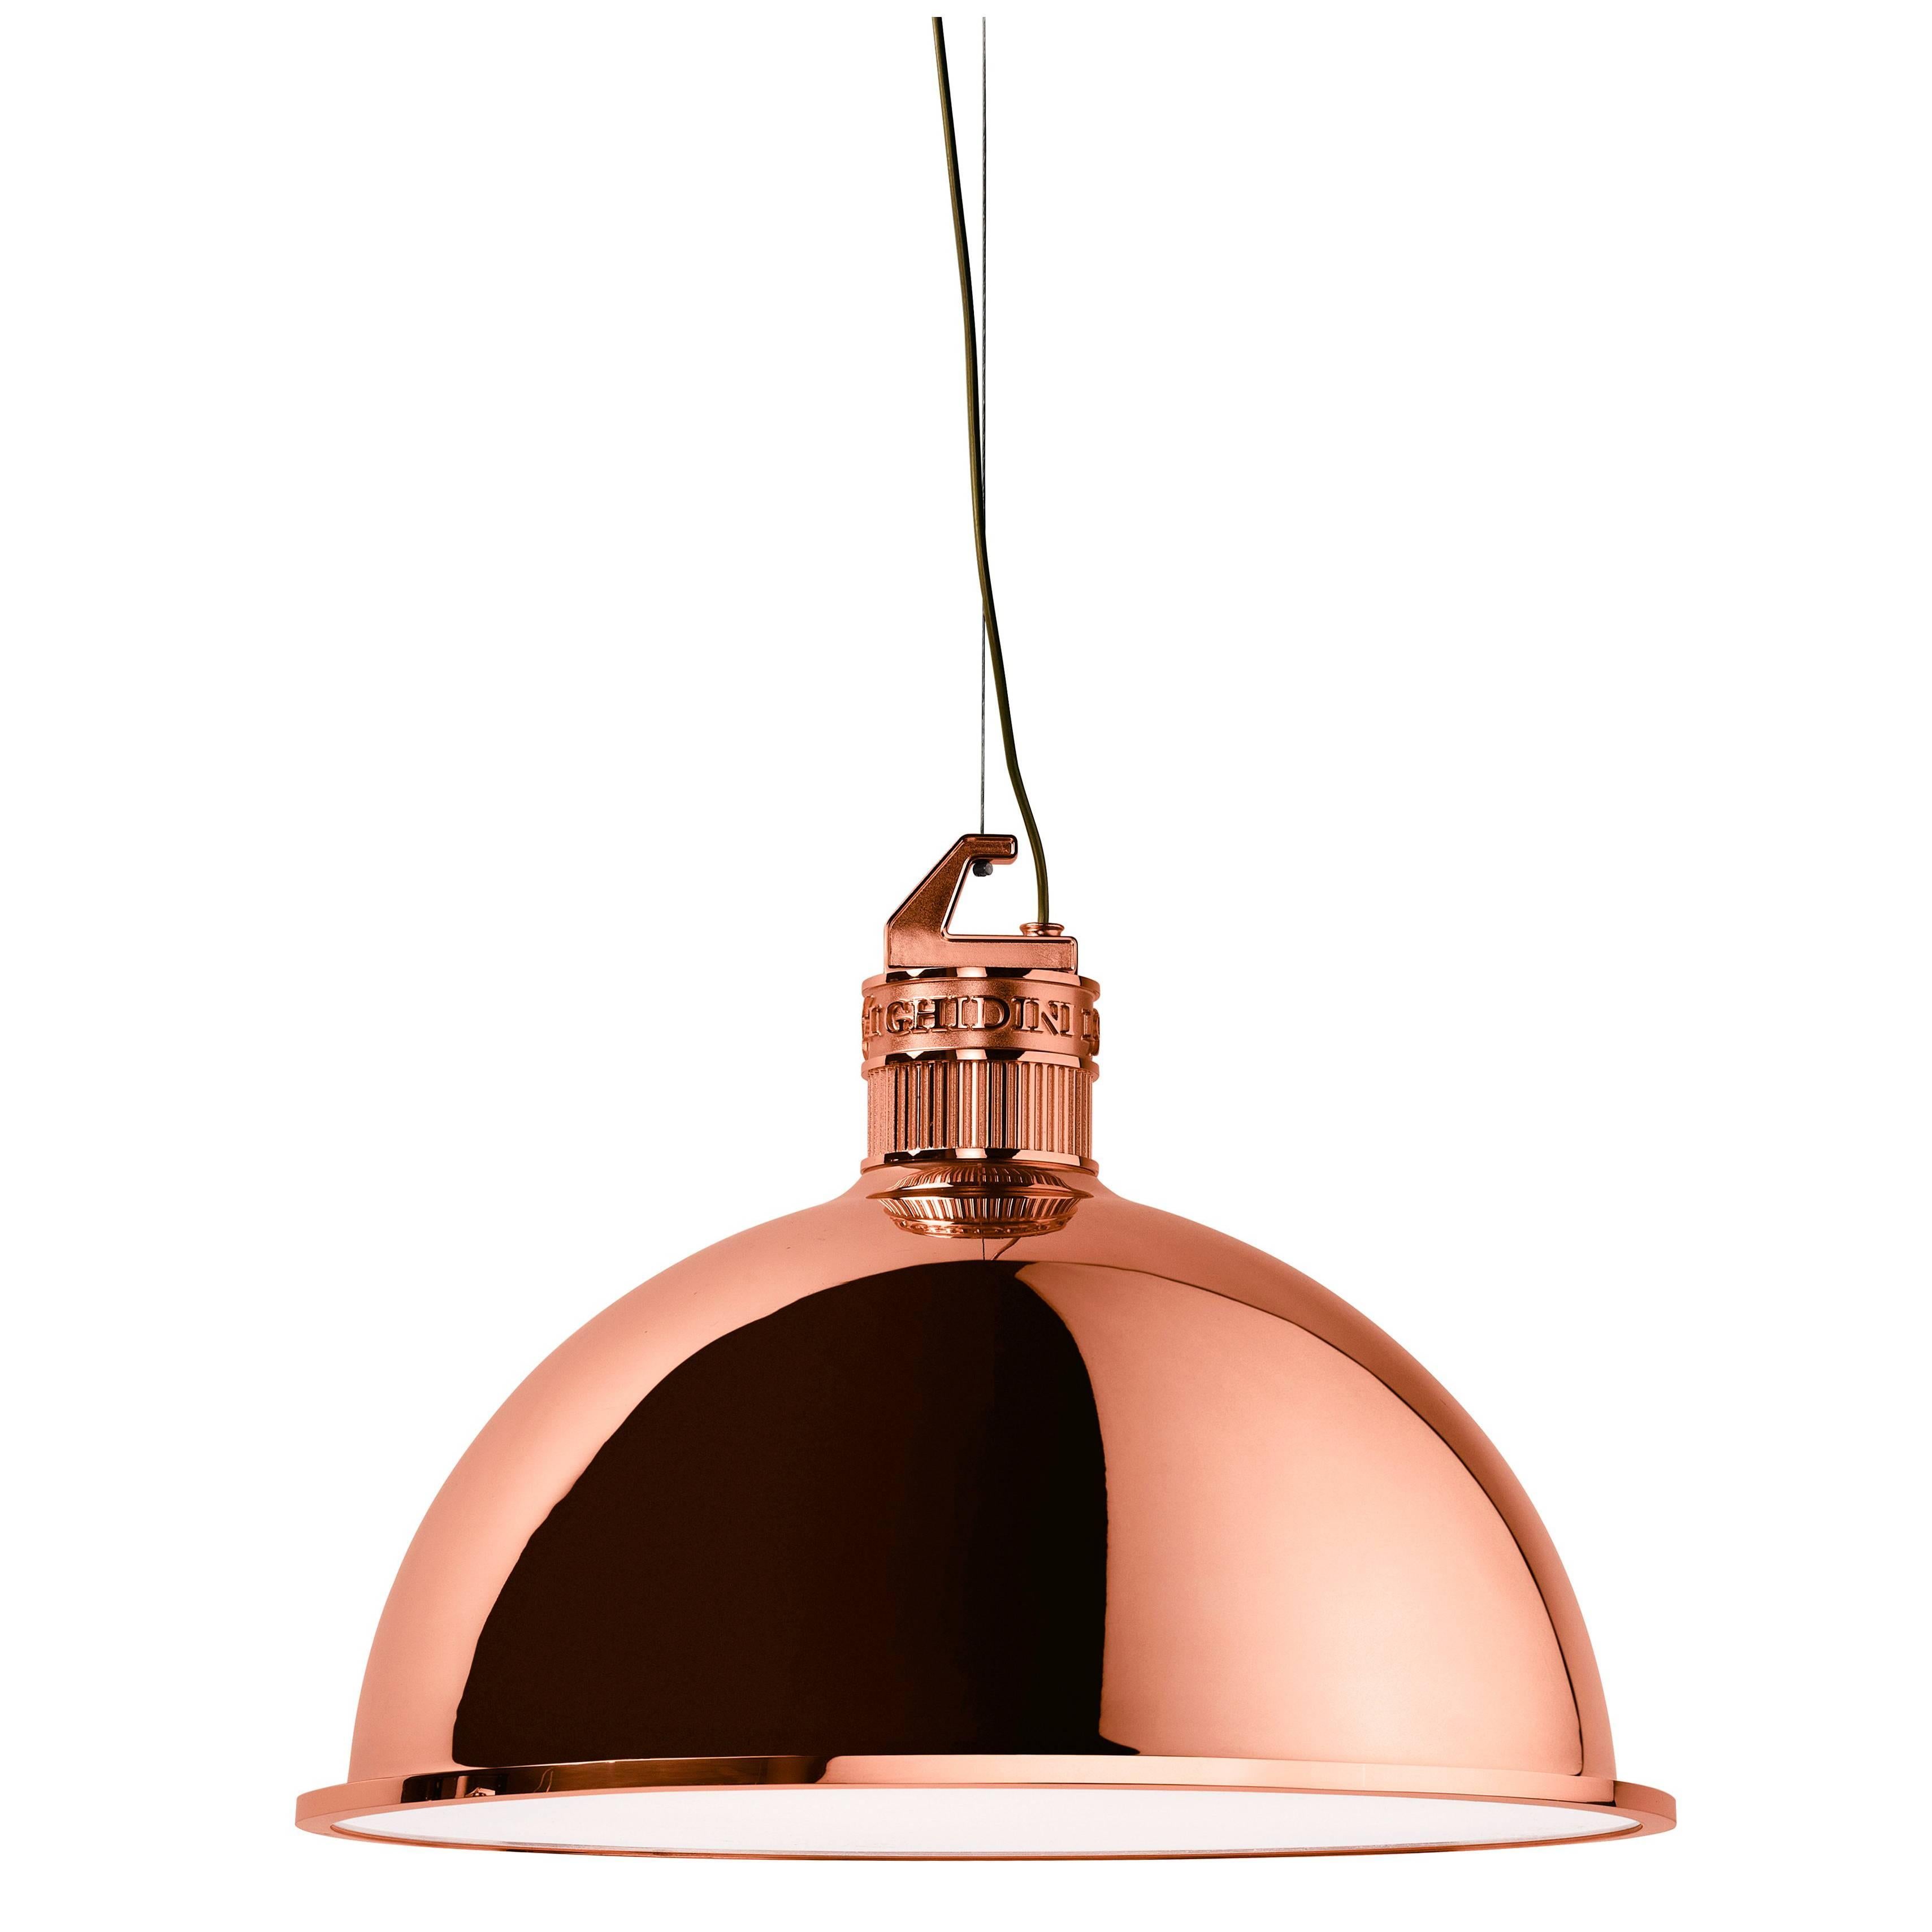 Ghidini 1961 Factory Medium Suspension Light in Rose Gold Finish For Sale